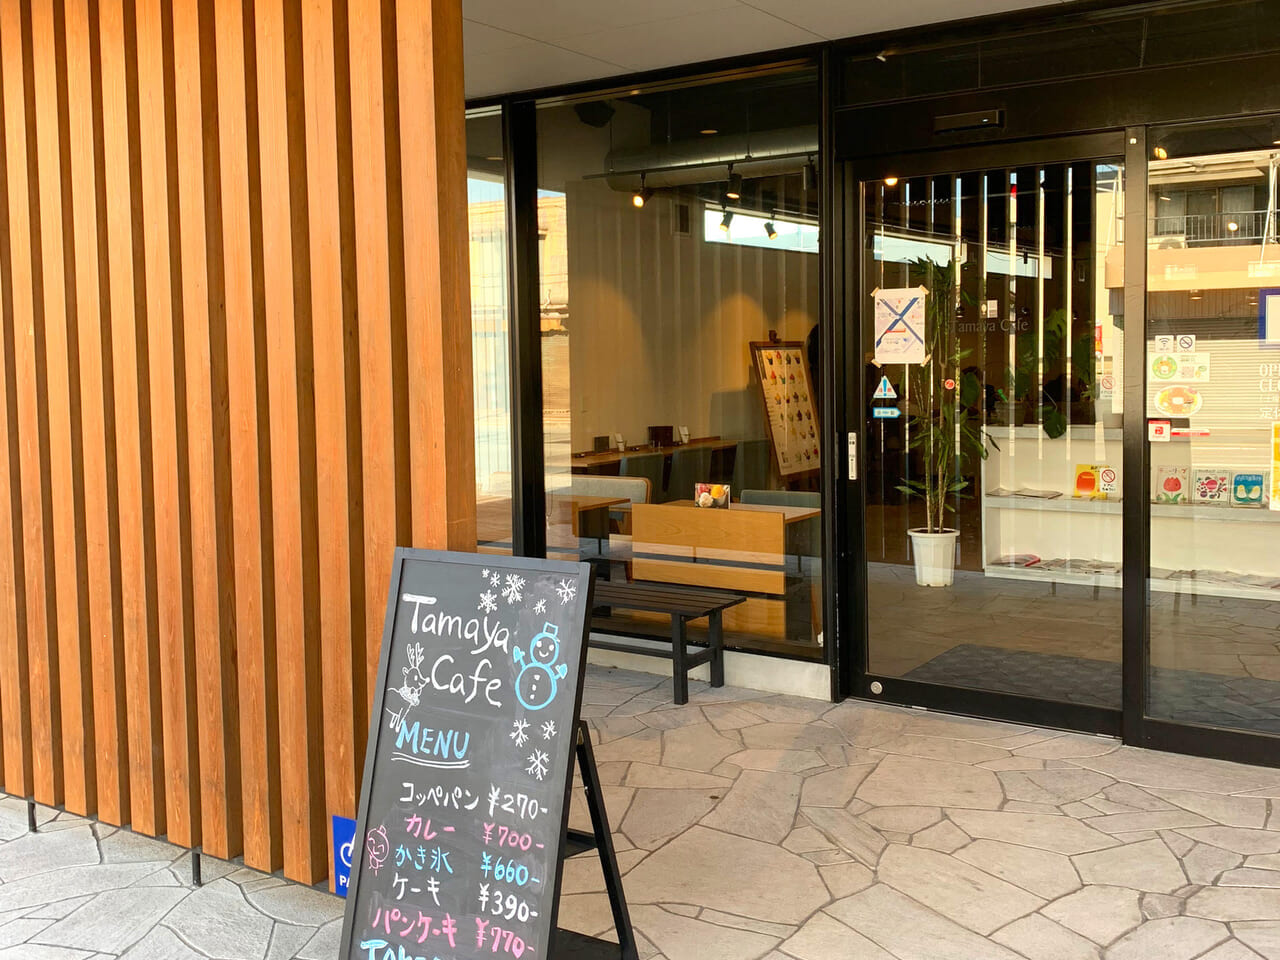 常盤町にある喫茶店「タマヤカフェ」は落ち着いた空間とデザートがおすすめのお店です!!